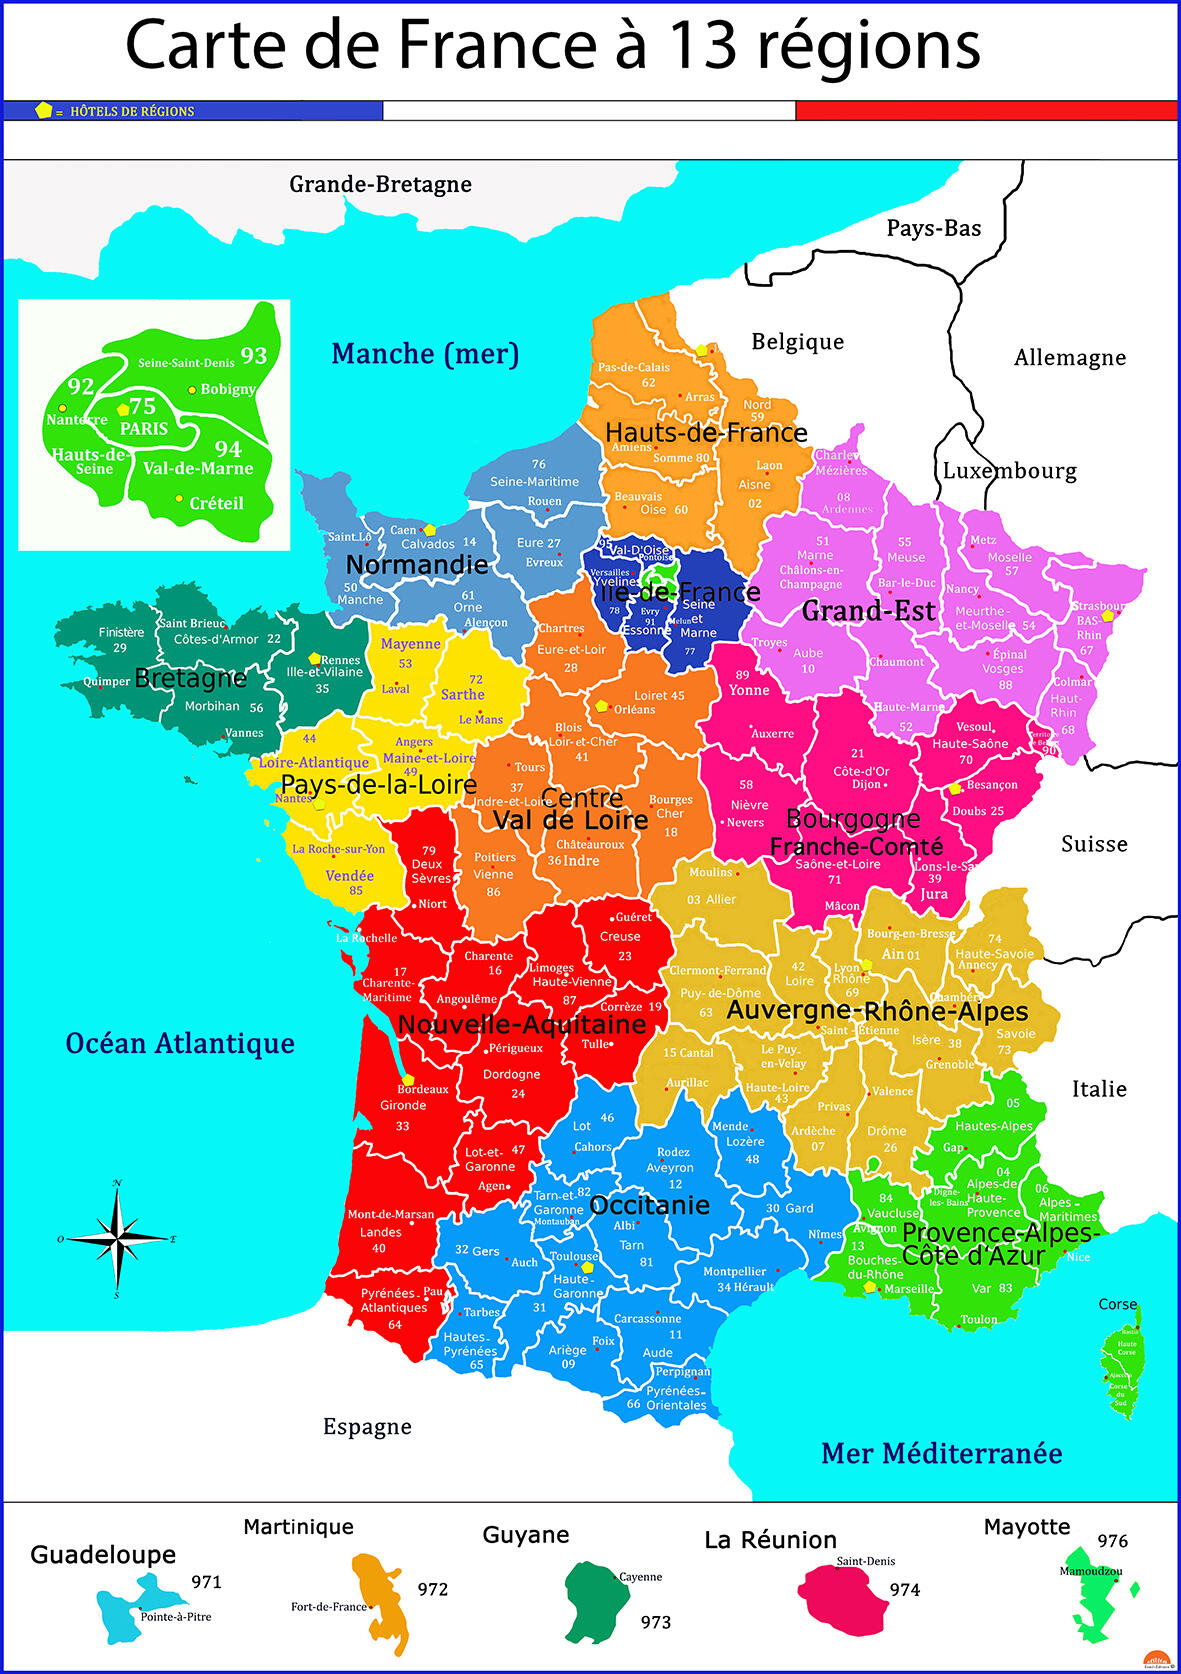 Carte de France des 13 régions